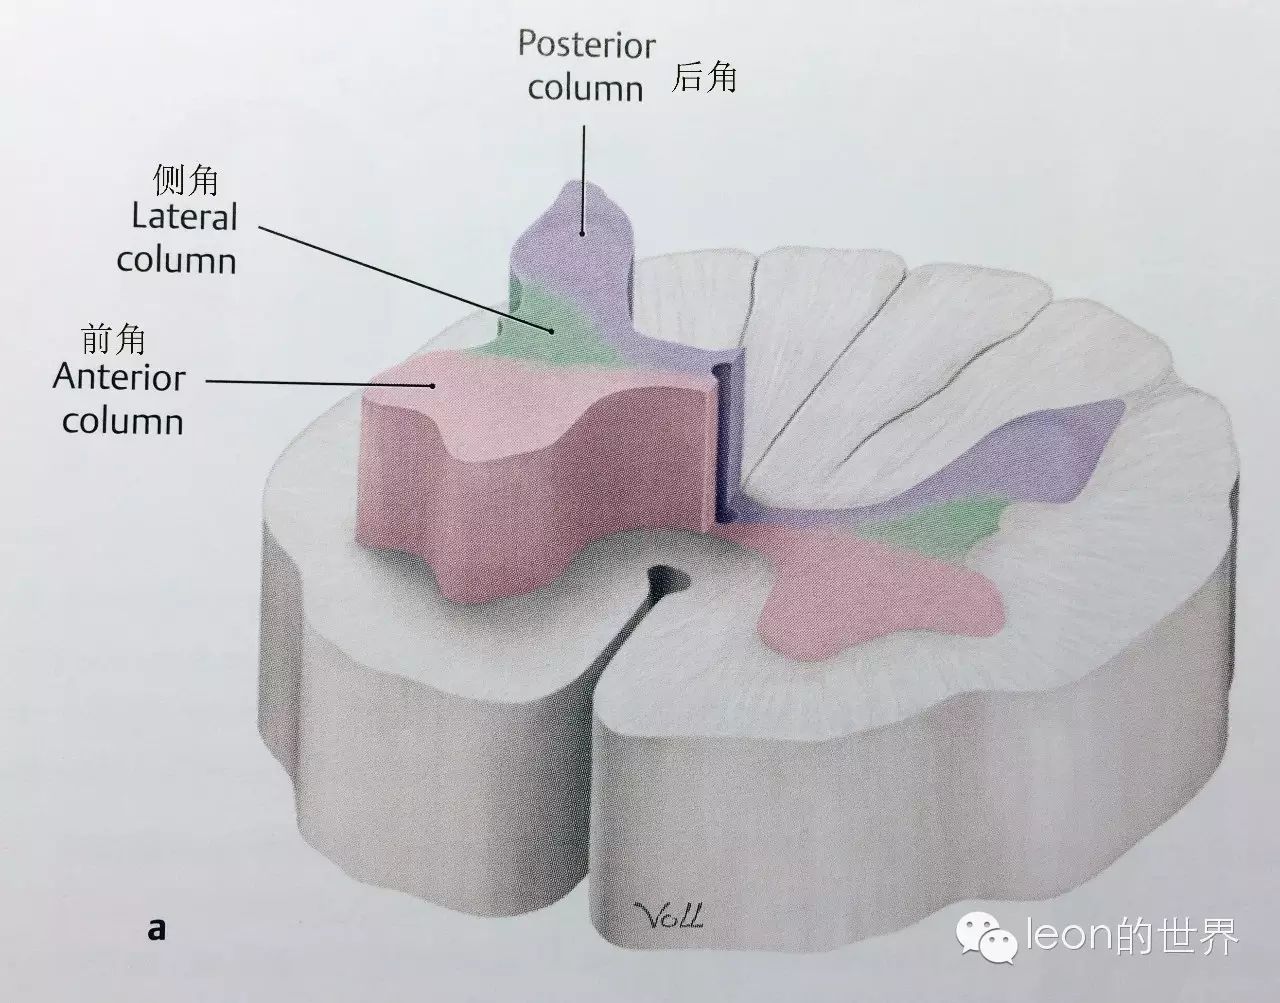 看完了脊髓外部的解剖,再来看看脊髓内部的解剖结构: 脊髓灰质解剖